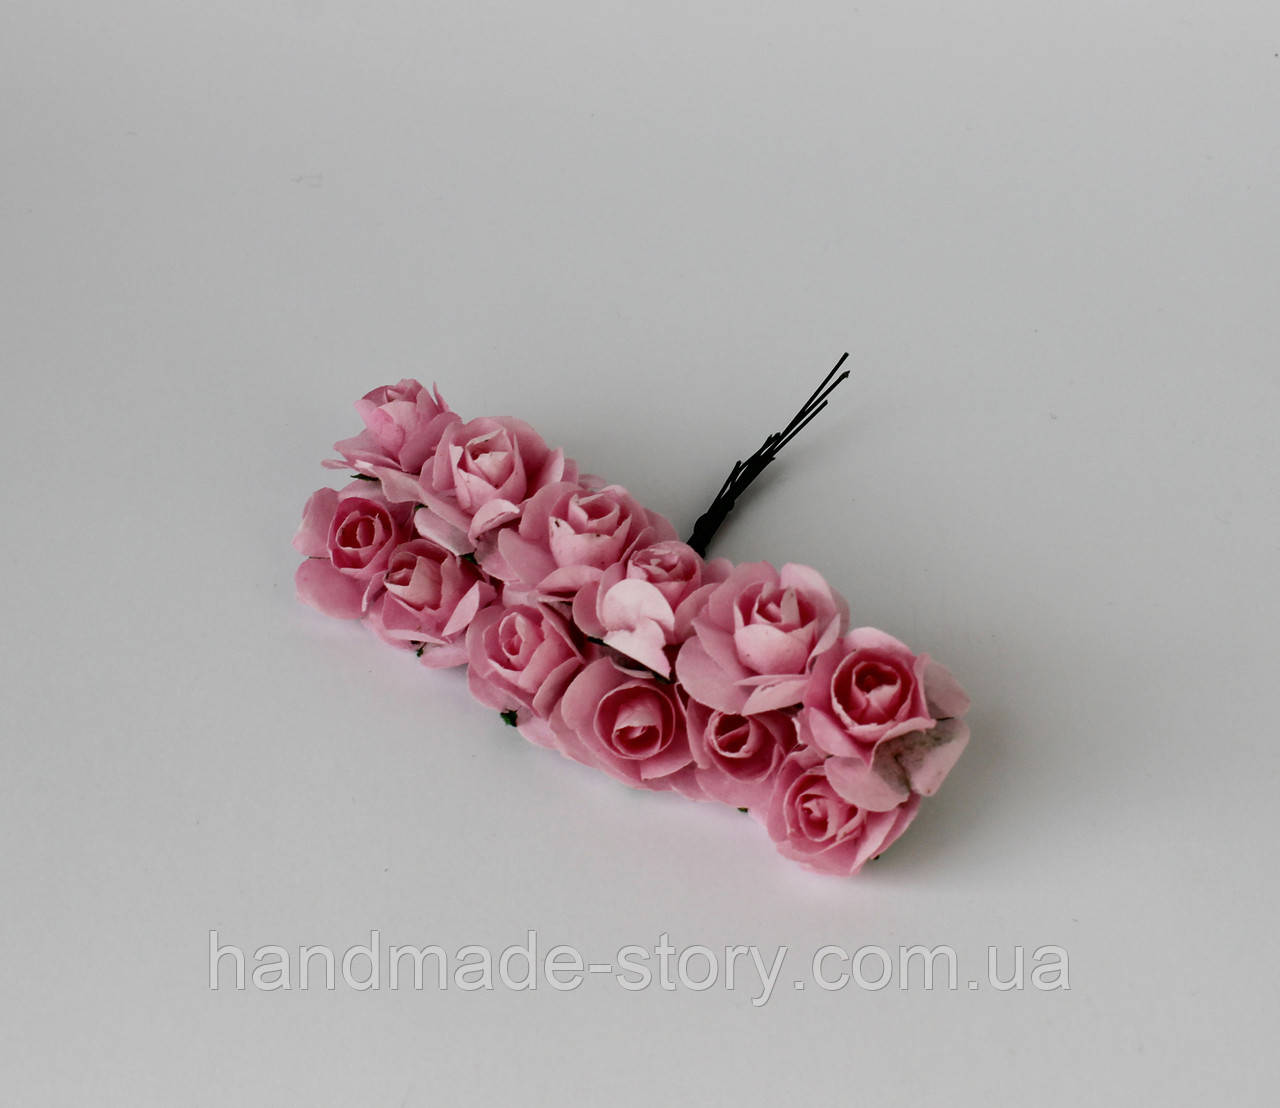 Паперові рожеві флористичні троянди, пучок 12шт, діаметр 2см